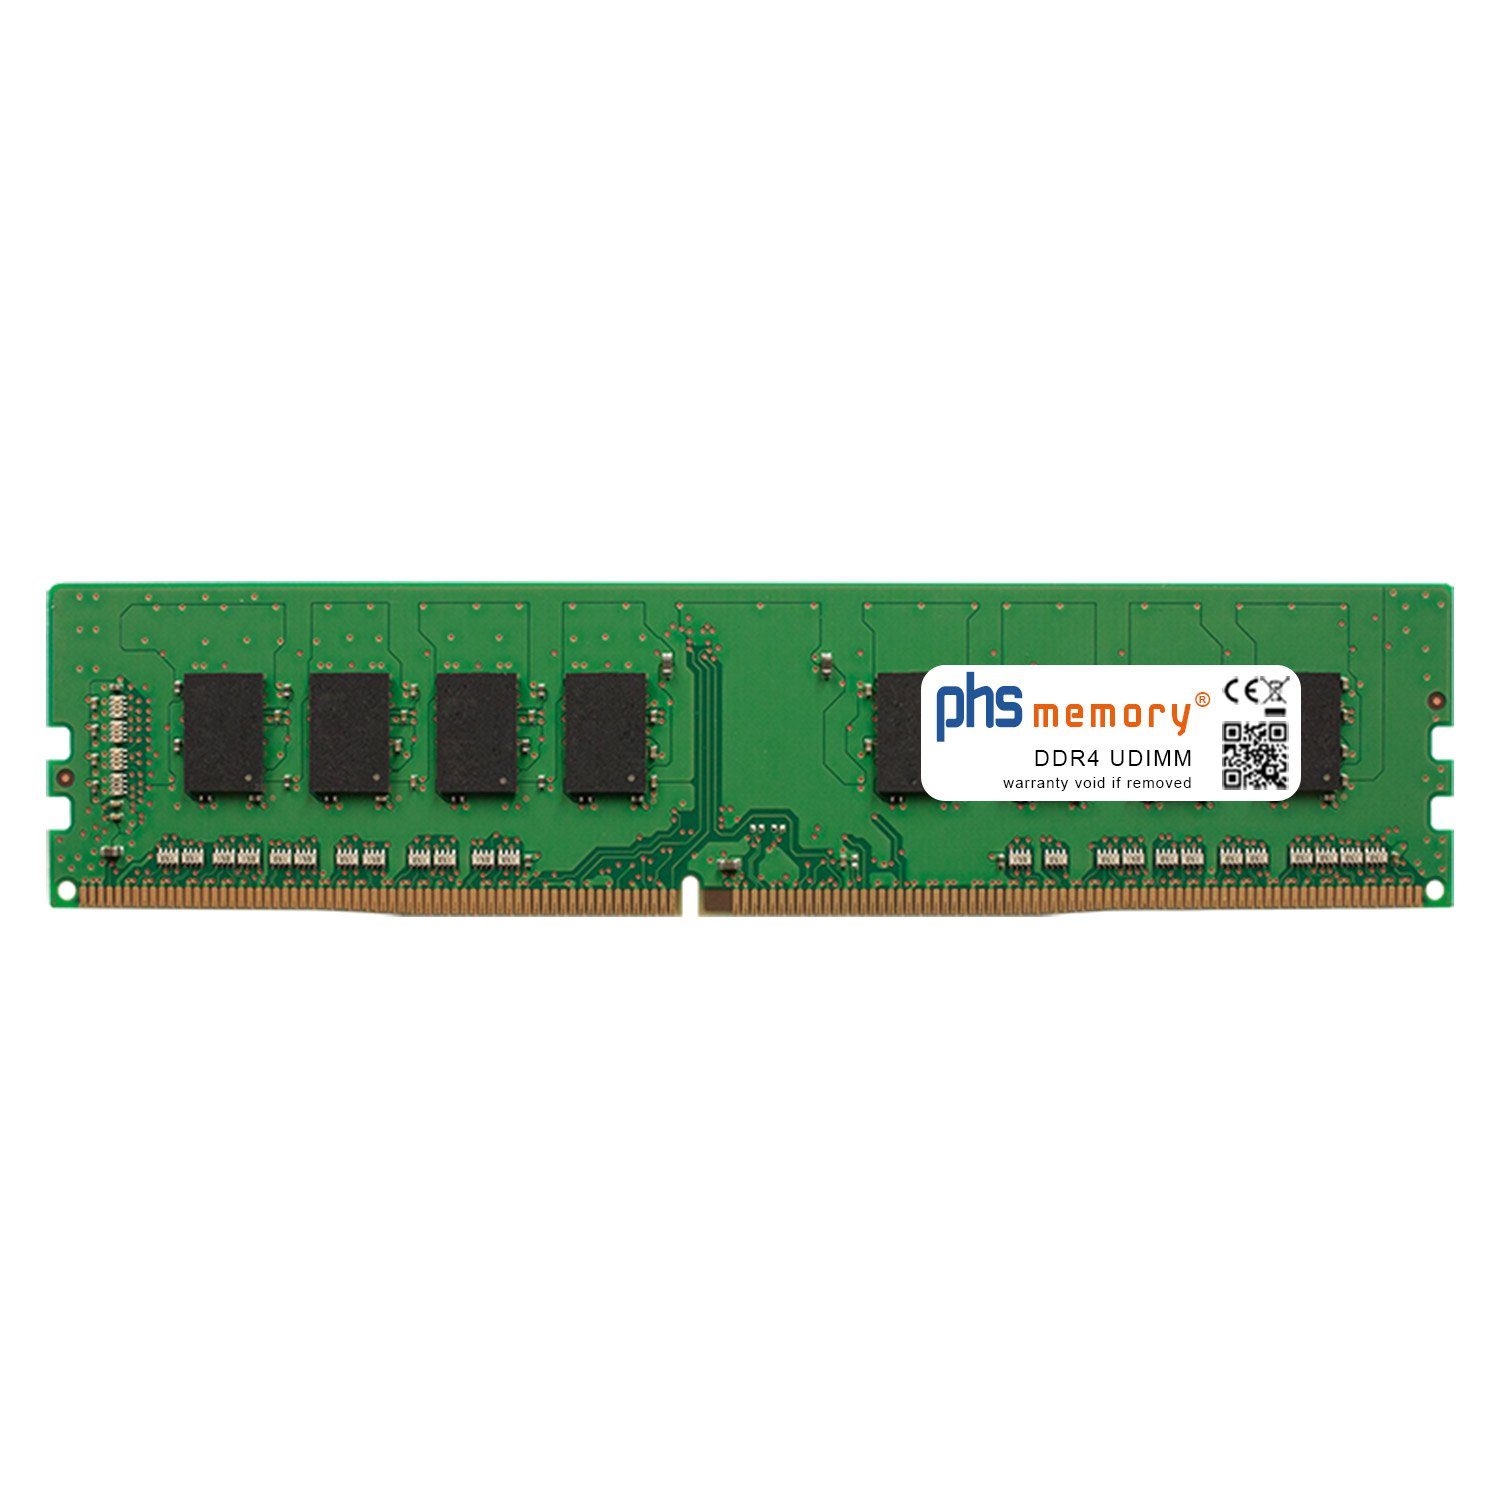 PHS-memory RAM für Captiva Highend Gaming R65-564 Arbeitsspeicher